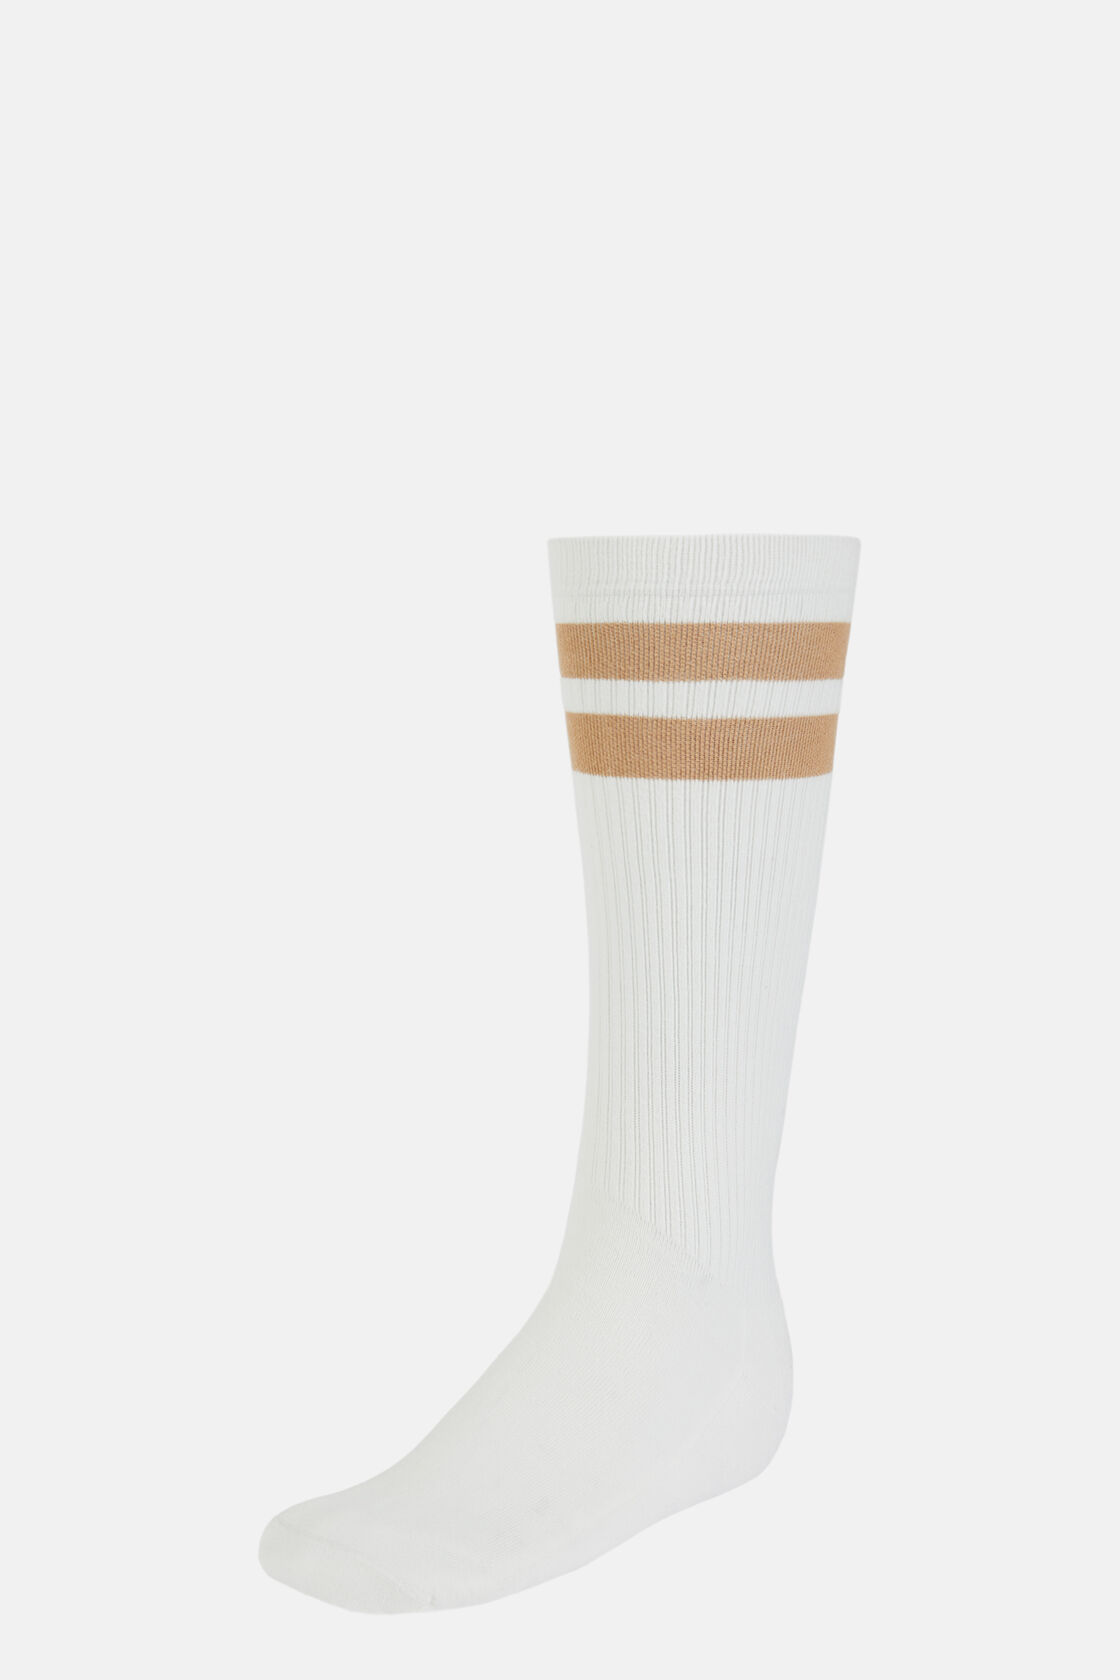 Κάλτσες με διπλή ρίγα, από σύμμεικτο βαμβάκι, White, hi-res